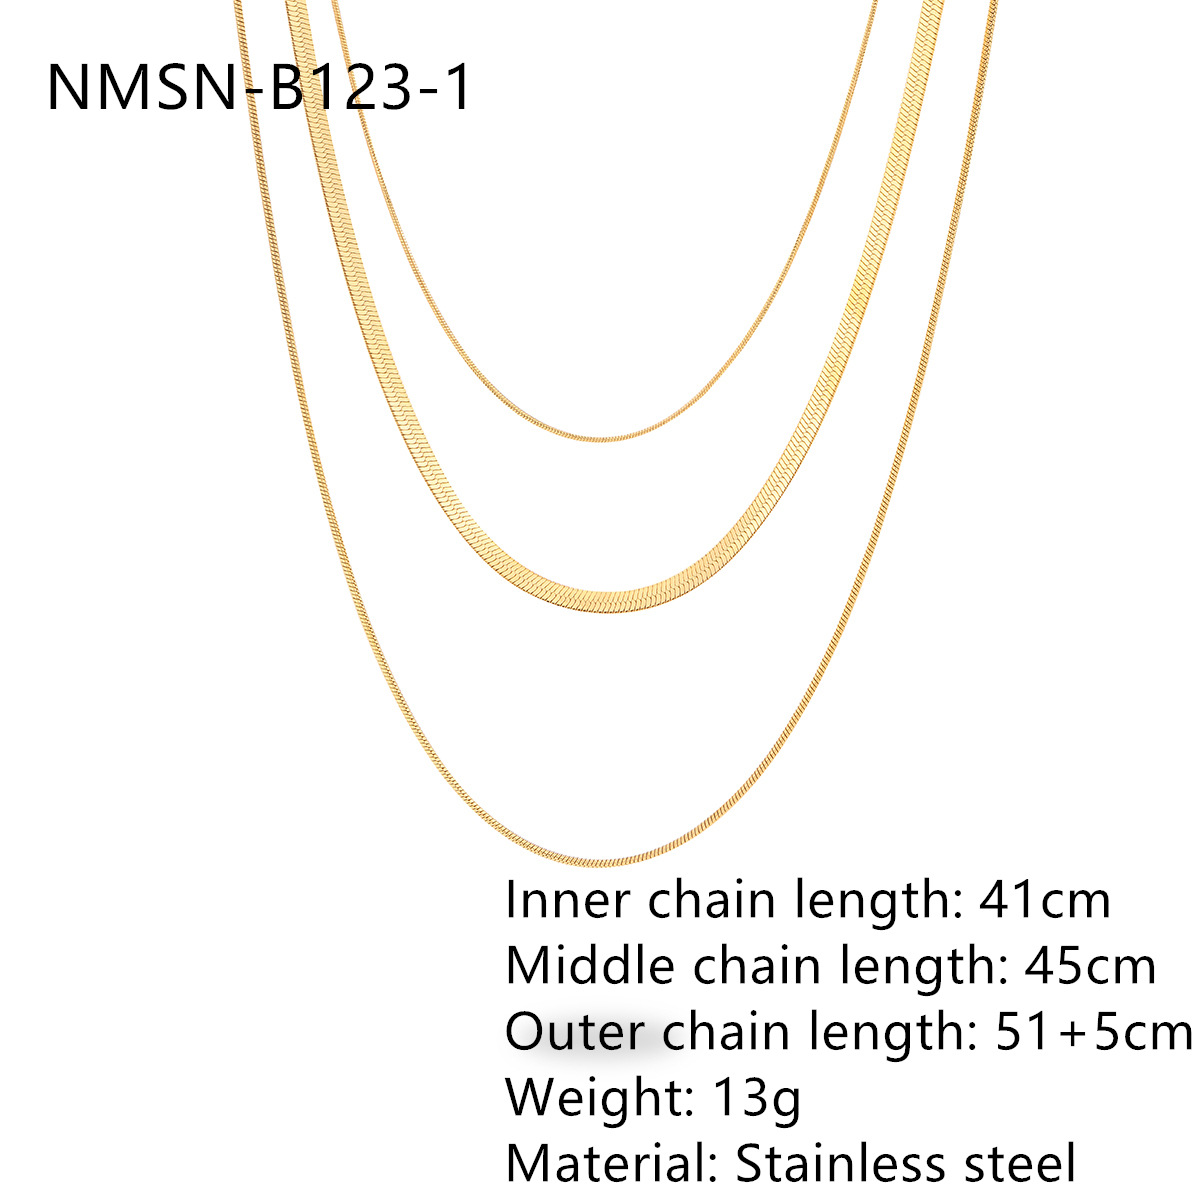 2:NMSN-B123-1